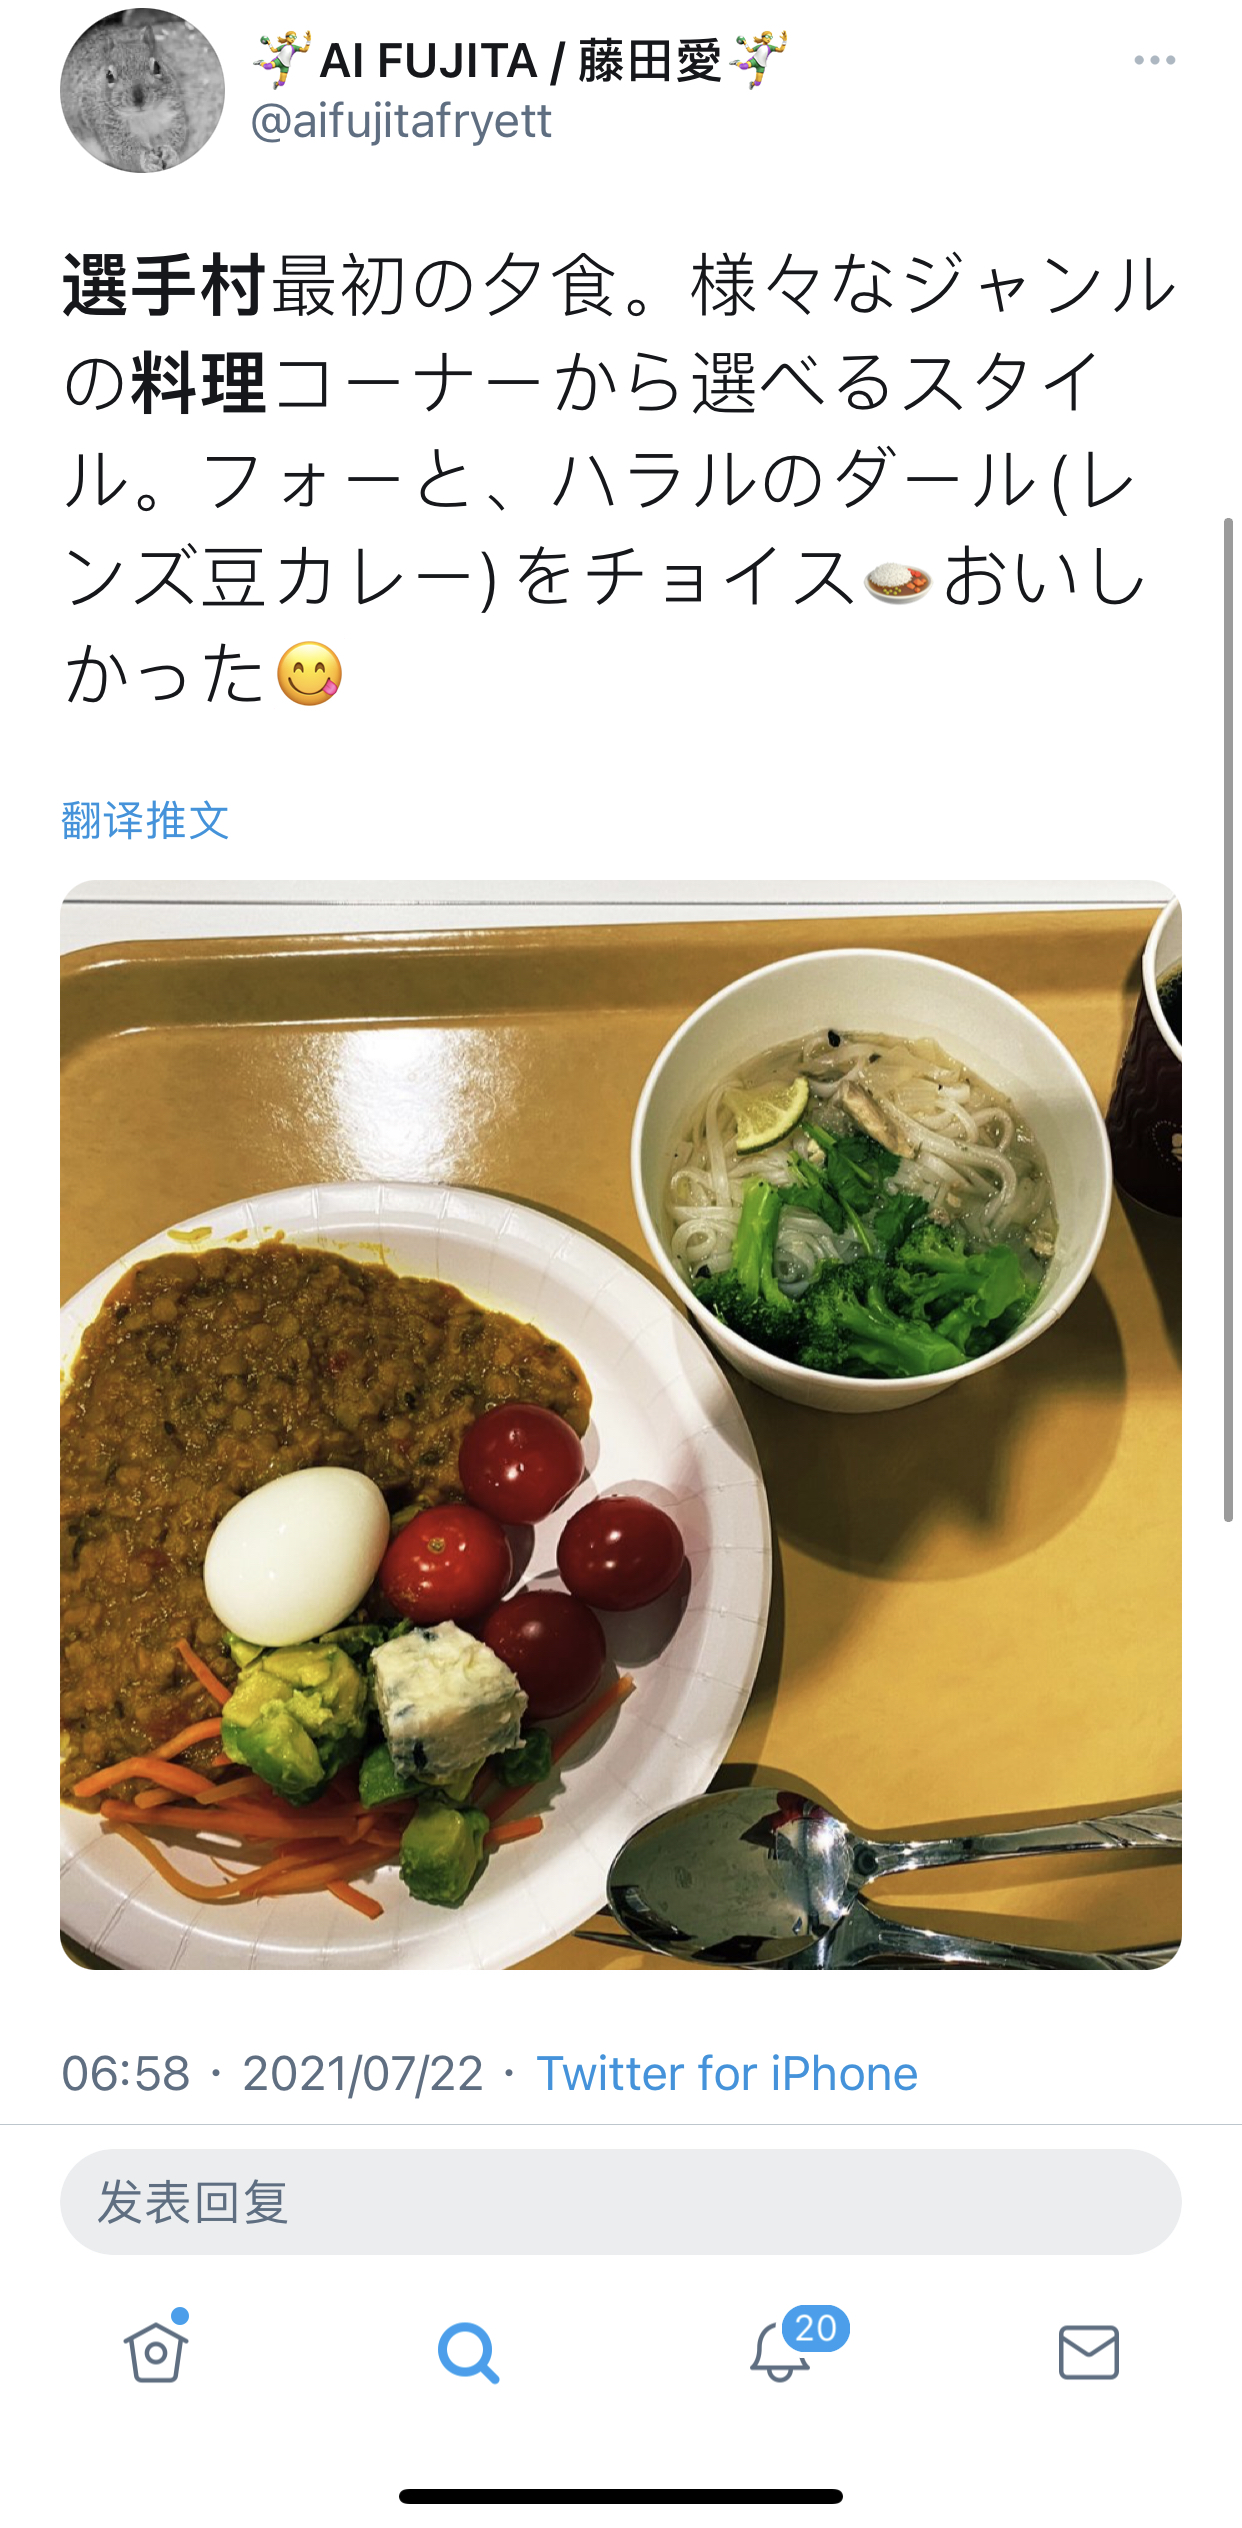 日本女子手球代表团随队翻译藤井爱在twitter上po出的奥运村第一顿晚餐，有越南河粉、扁豆咖喱等等，她表示很美味。 Twitter截图